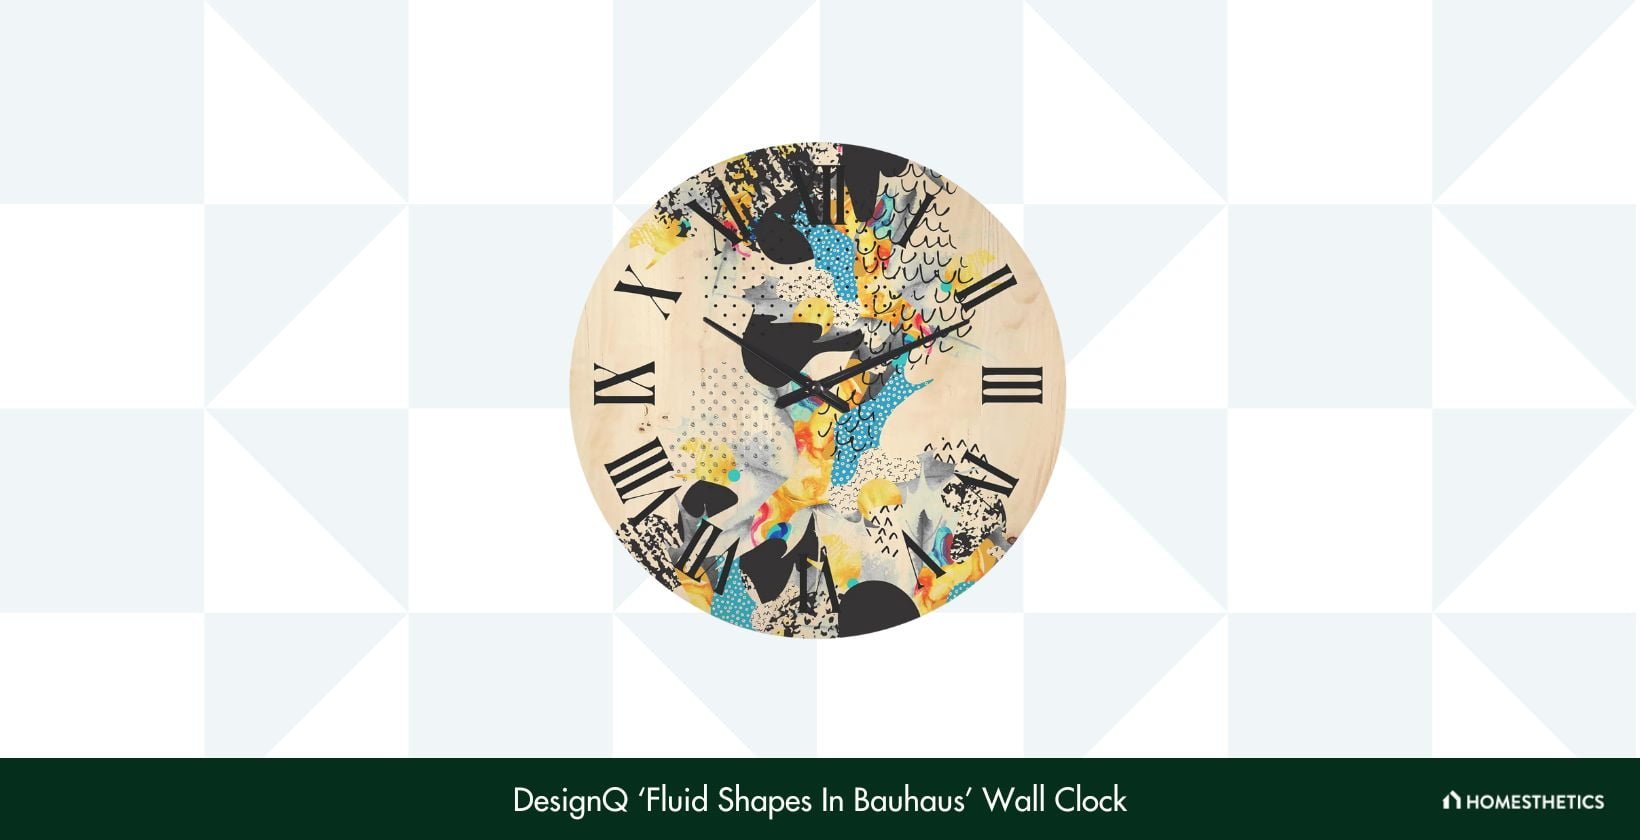 DesignQ ‘Fluid Shapes In Bauhaus Wall Clock